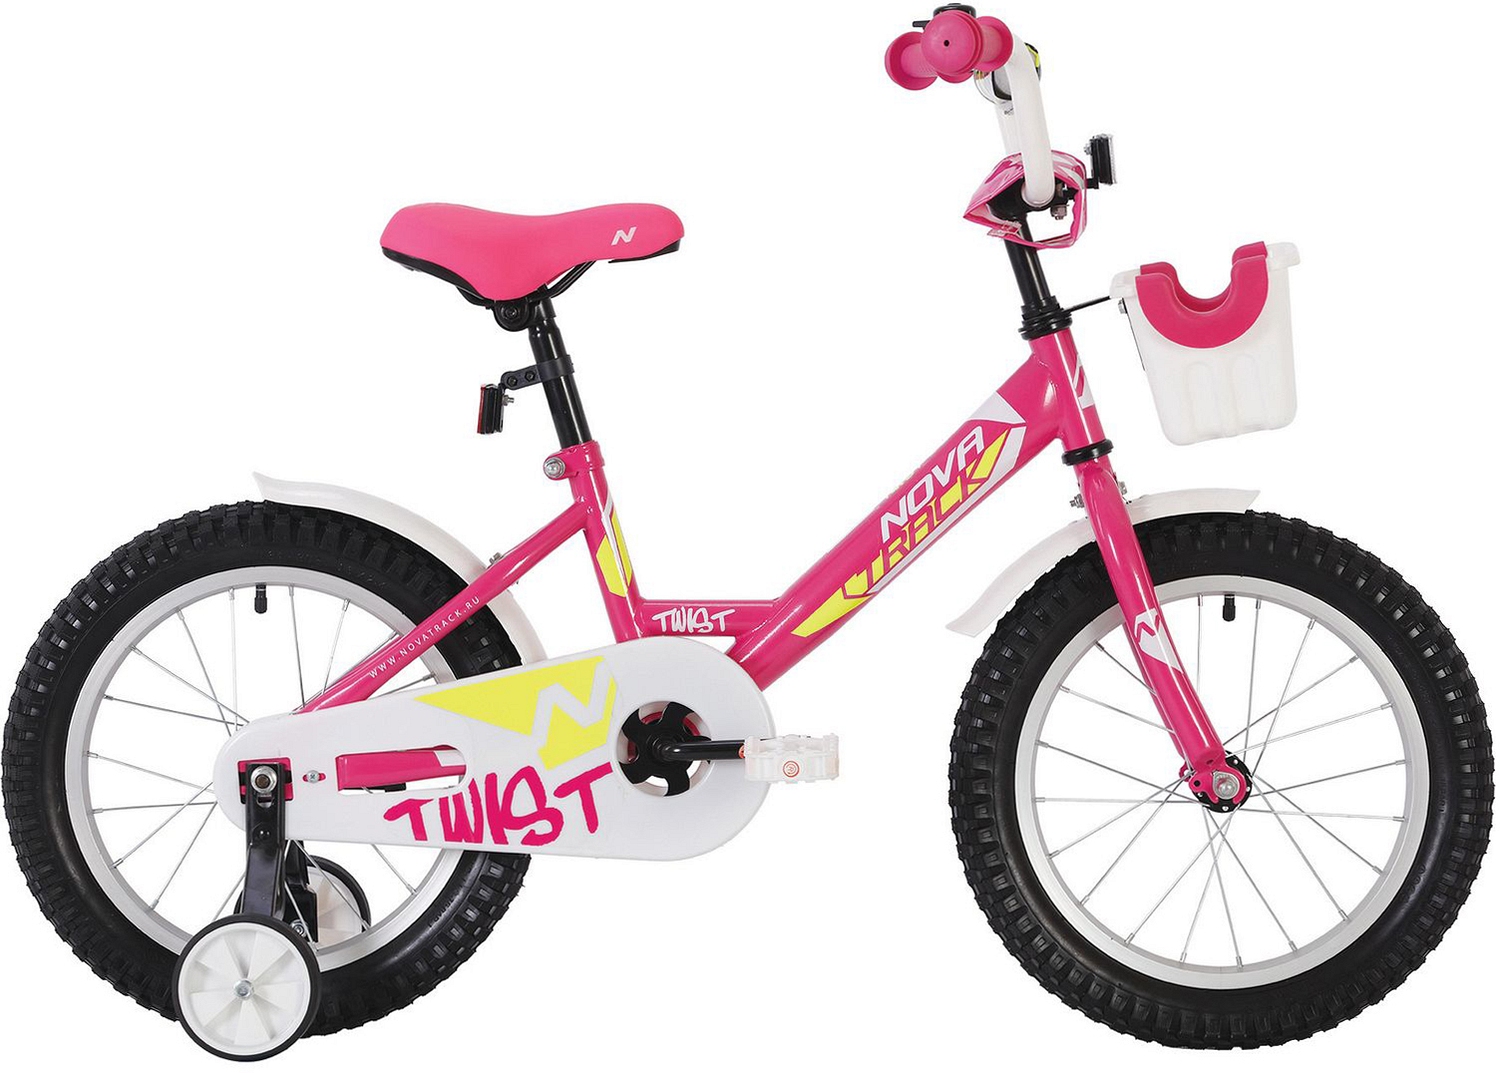  Отзывы о Детском велосипеде Novatrack Twist 12 с корзинкой 2020